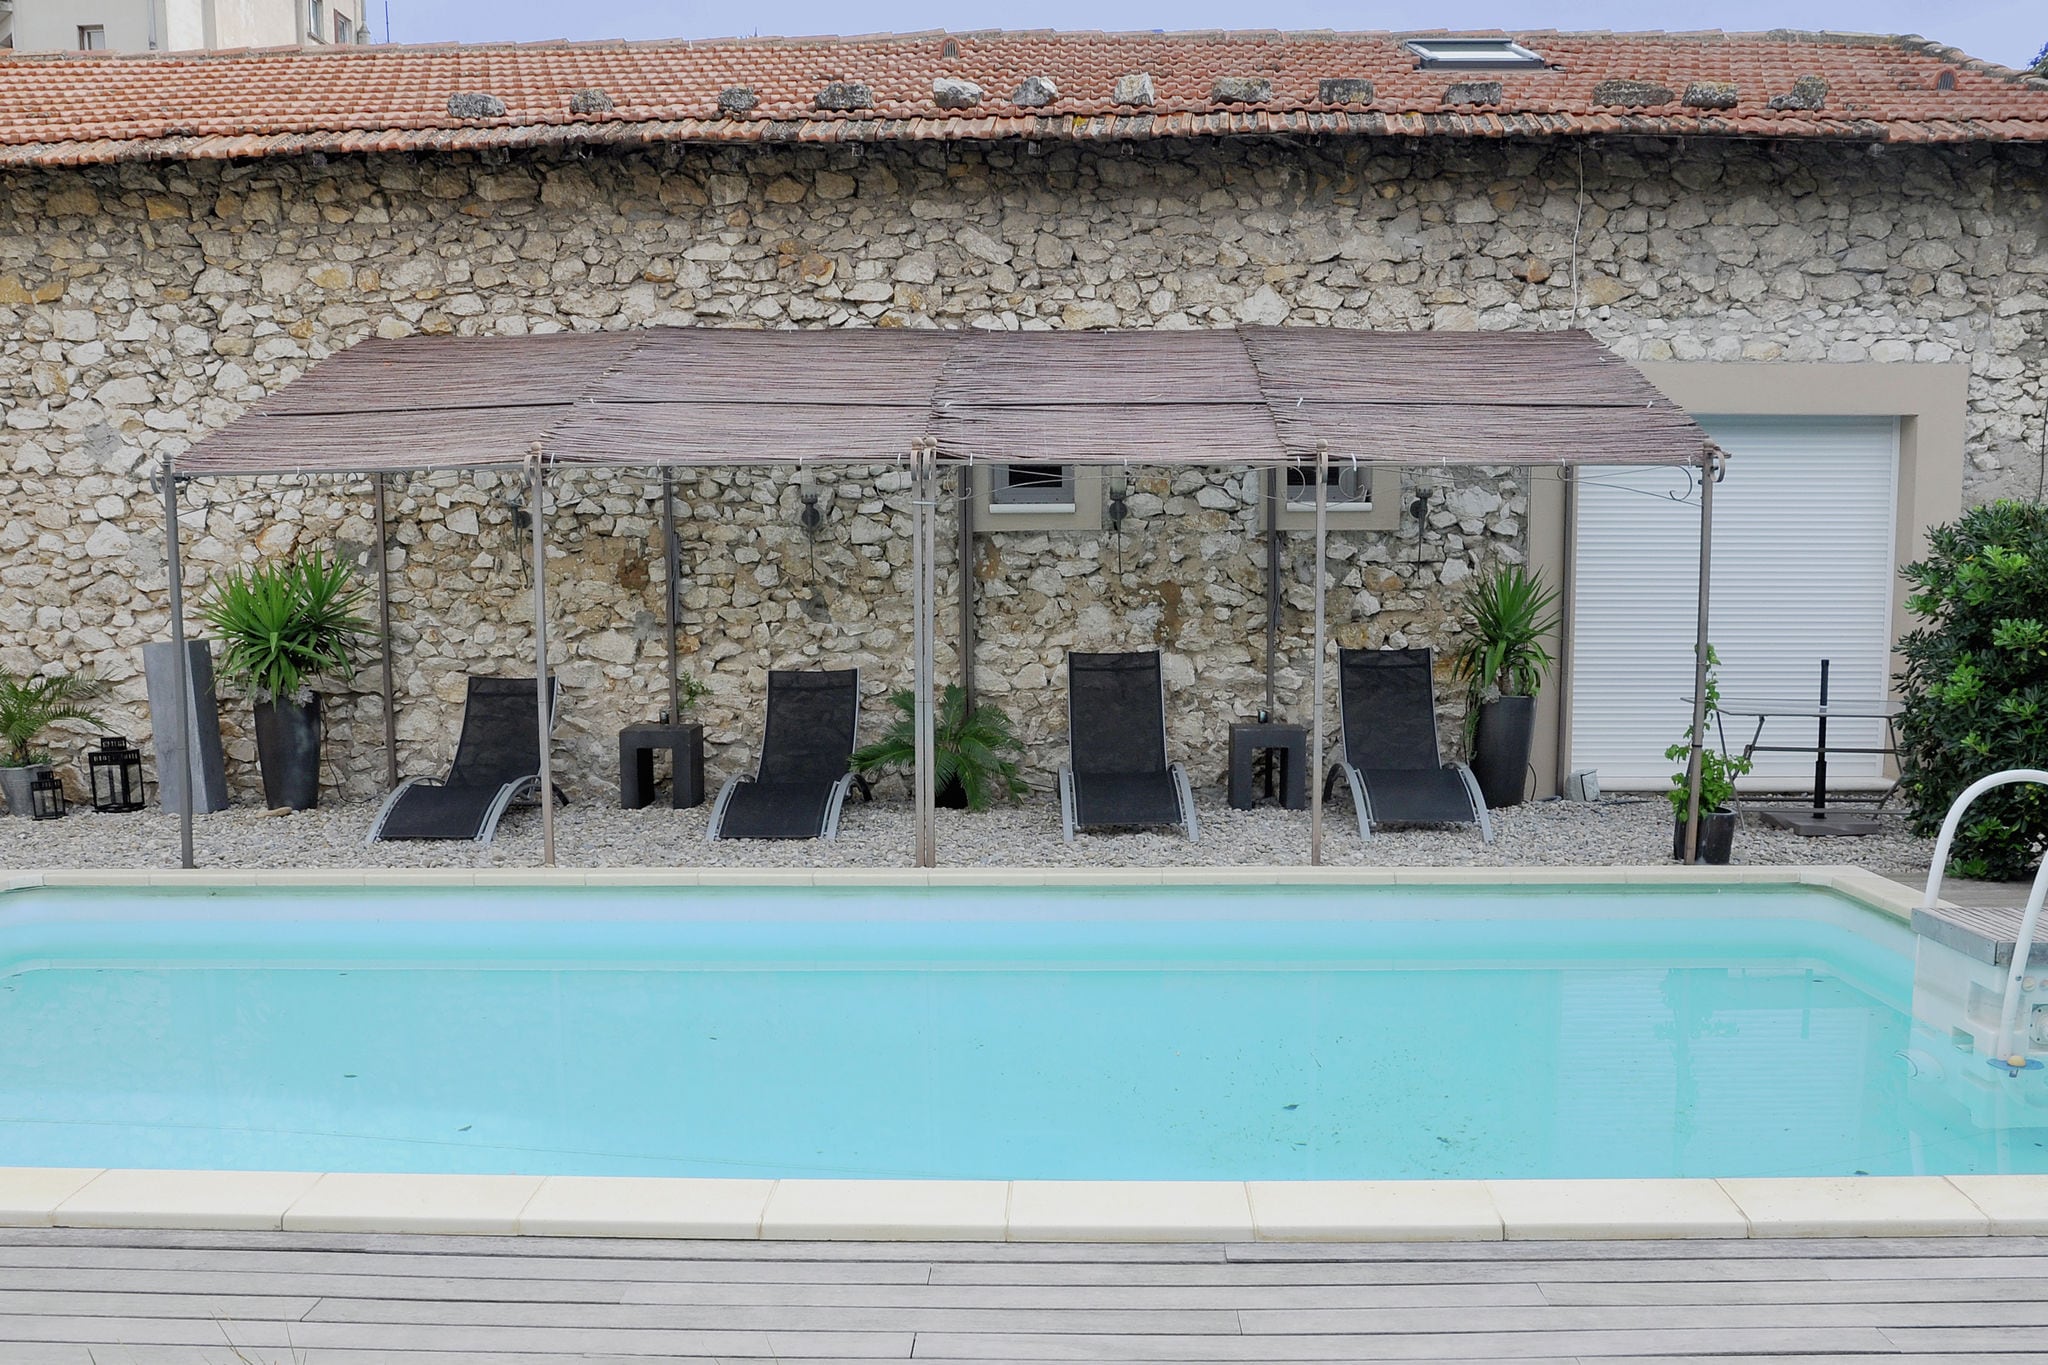 Schitterende en stijlvolle stadswoning met privé zwembad midden in Cavaillon